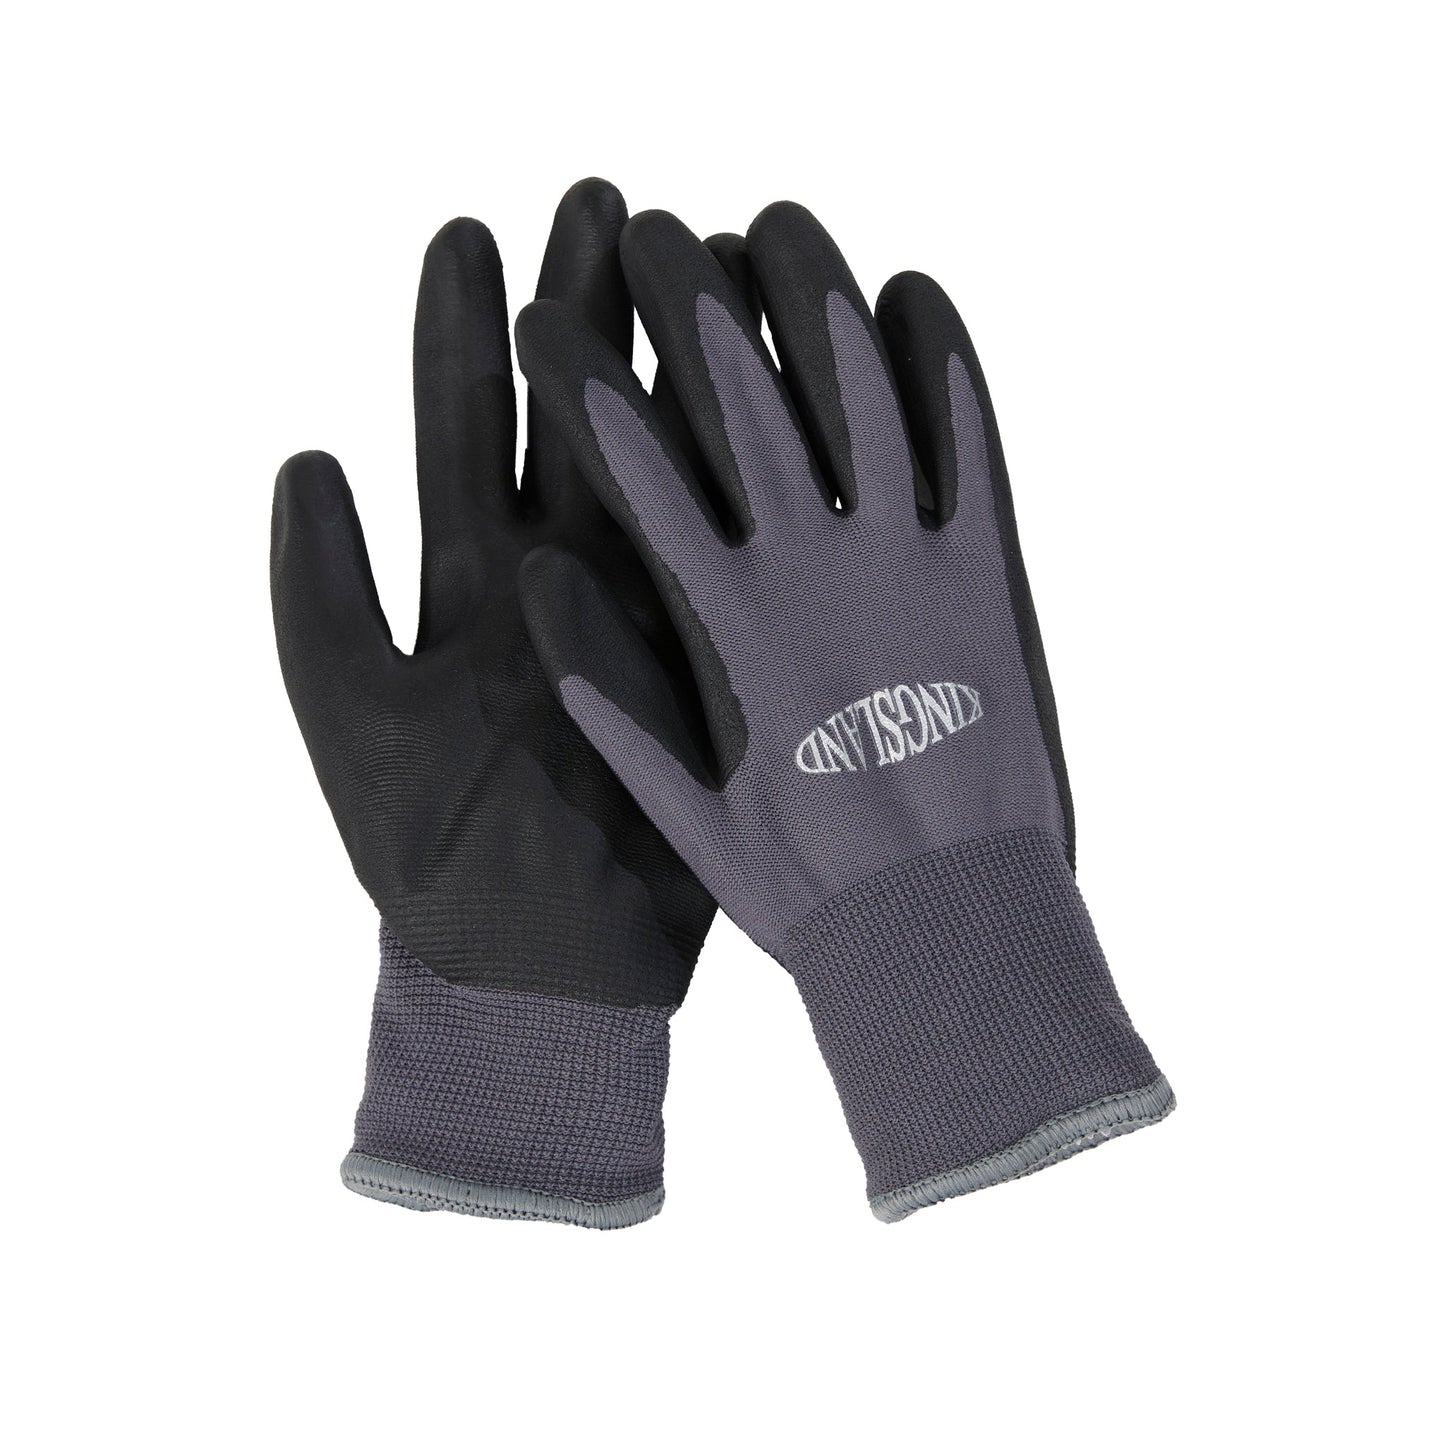 KLRayden Unisex Working Gloves